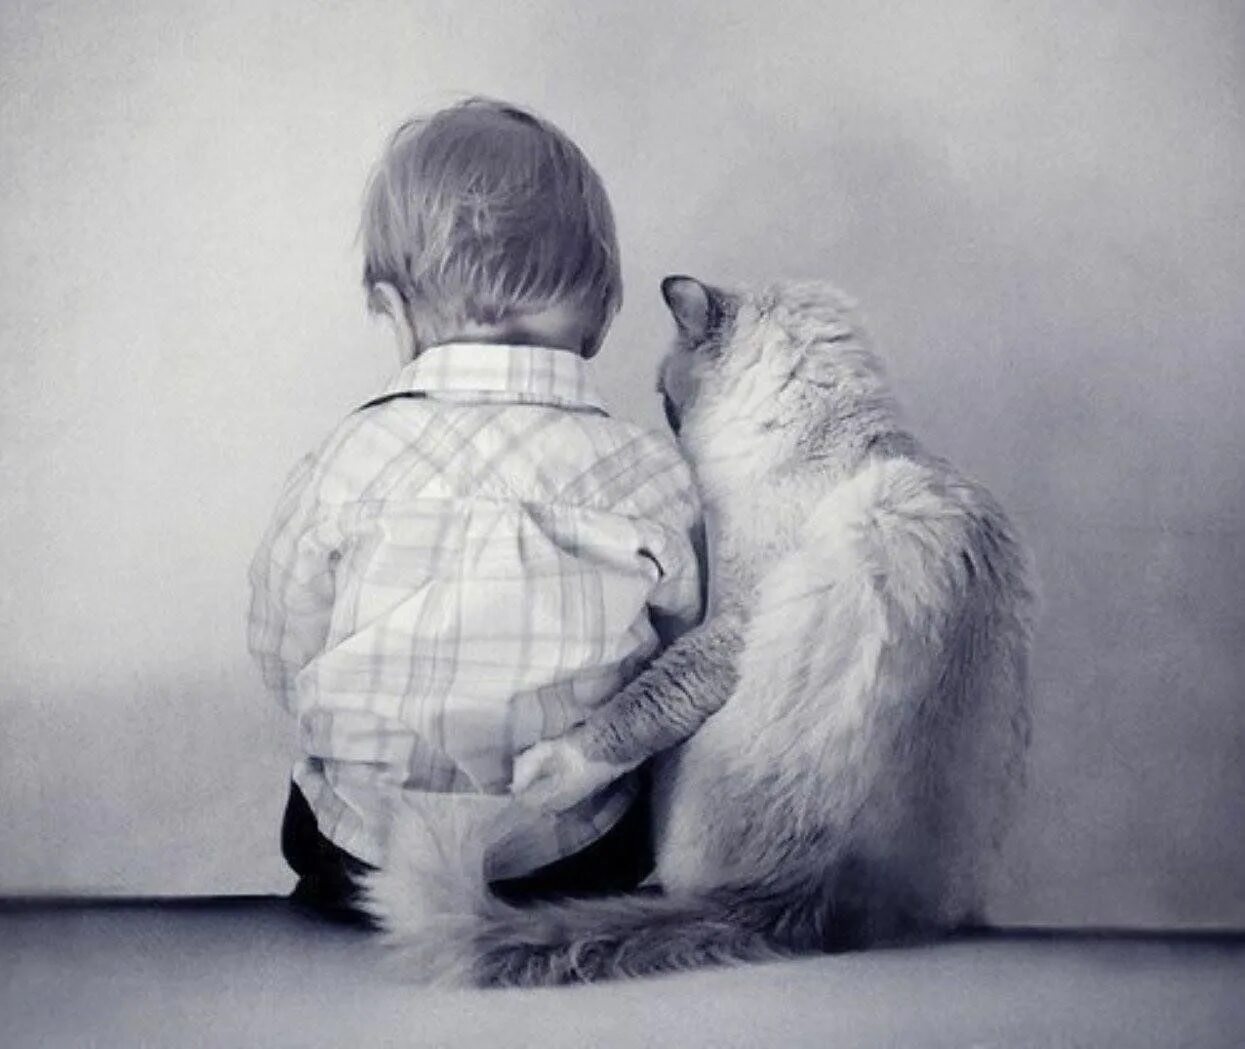 Плохо без друга. Мальчик обнимает кота. Обнимашки людей. Поддержка в трудную минуту. Объятия животных.